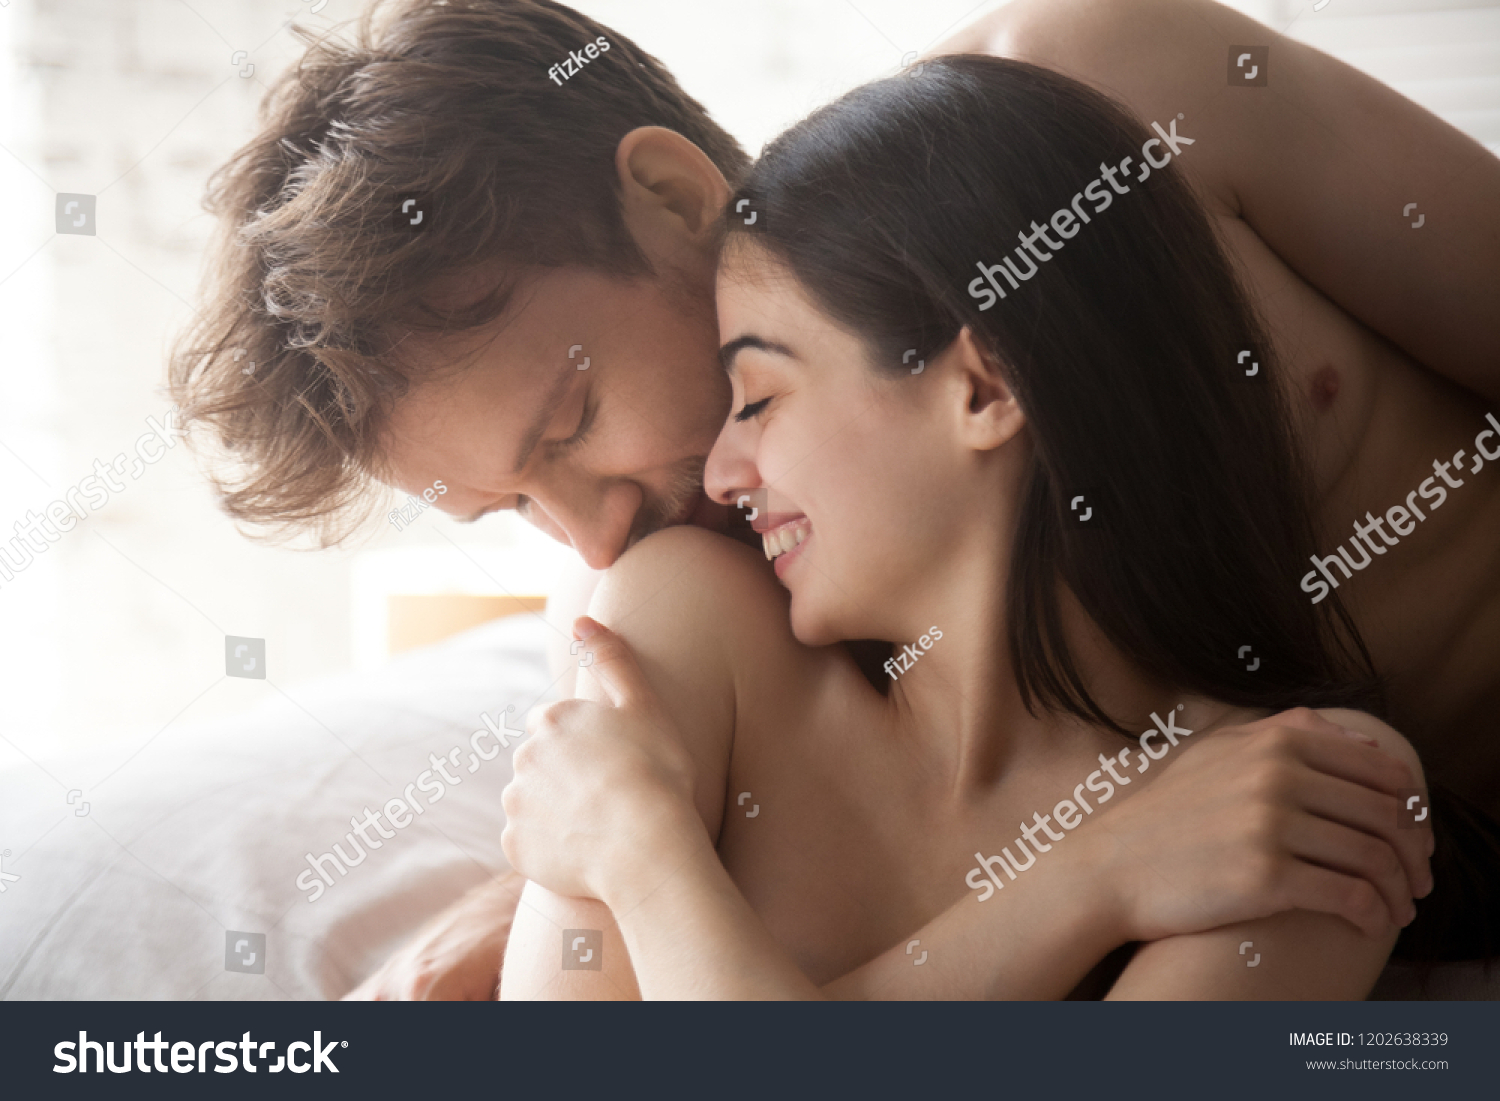 Boyfriend girlfriend erotic cuddle